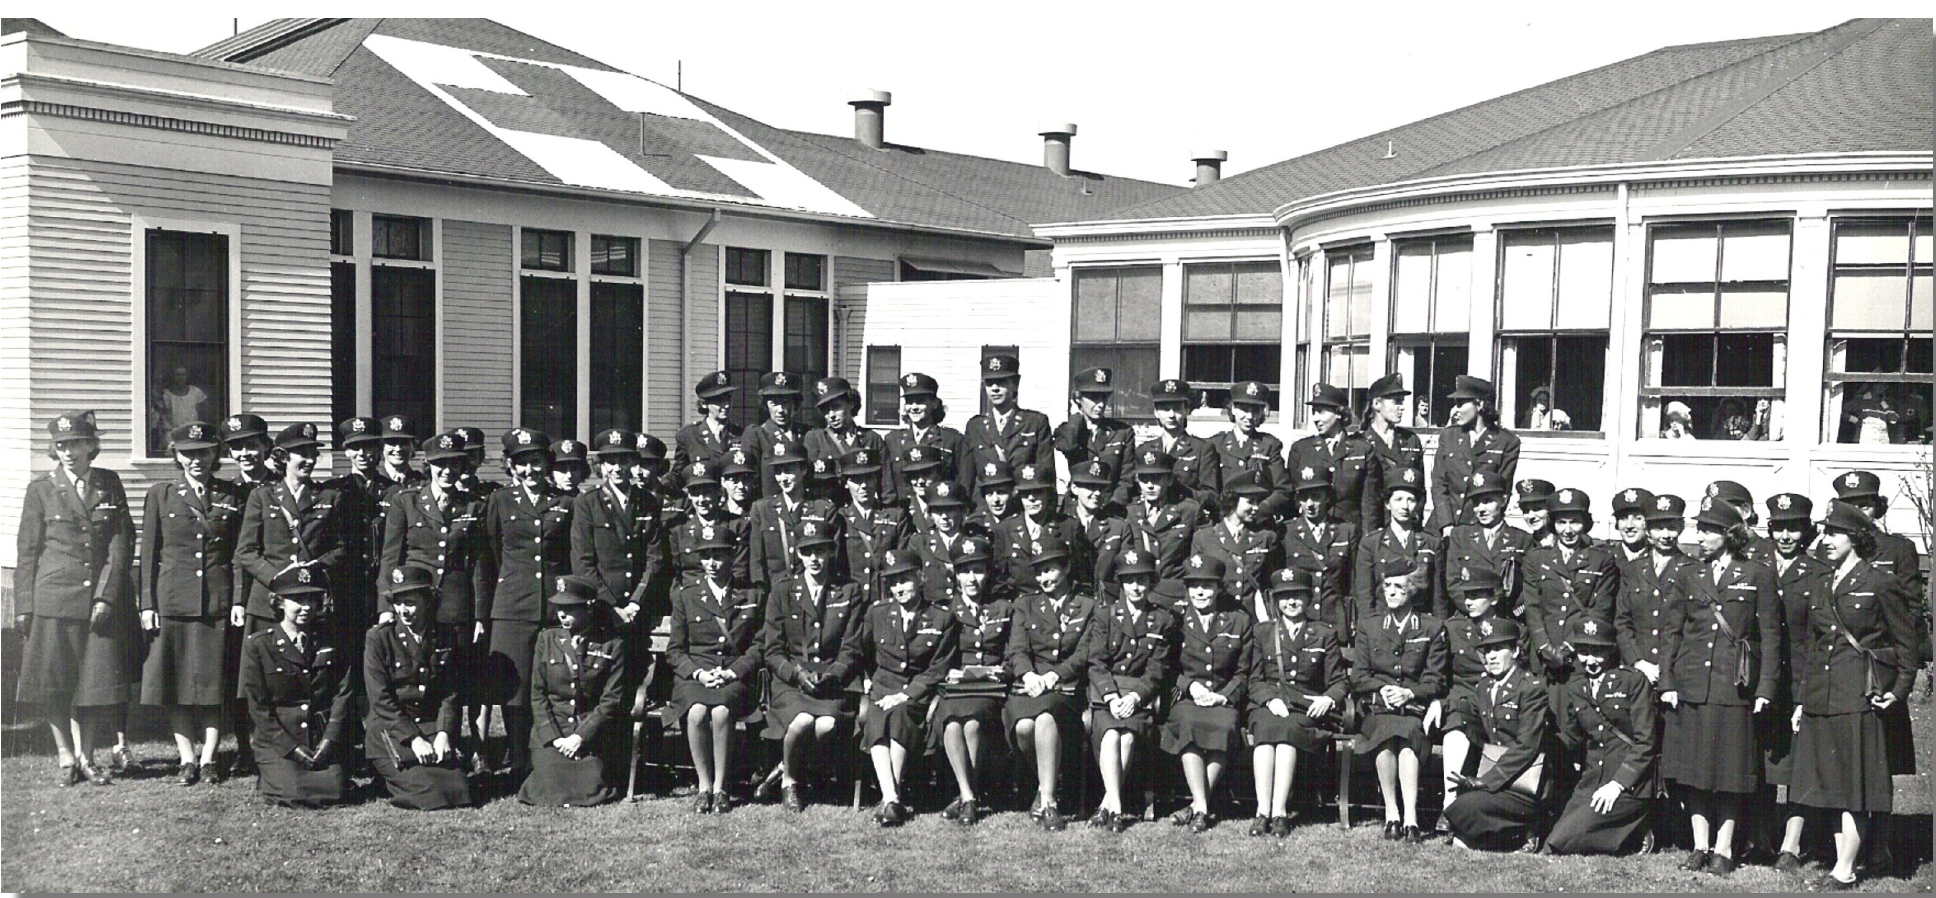 The former prisoner of war nurses at Letterman General Hospital, 1945